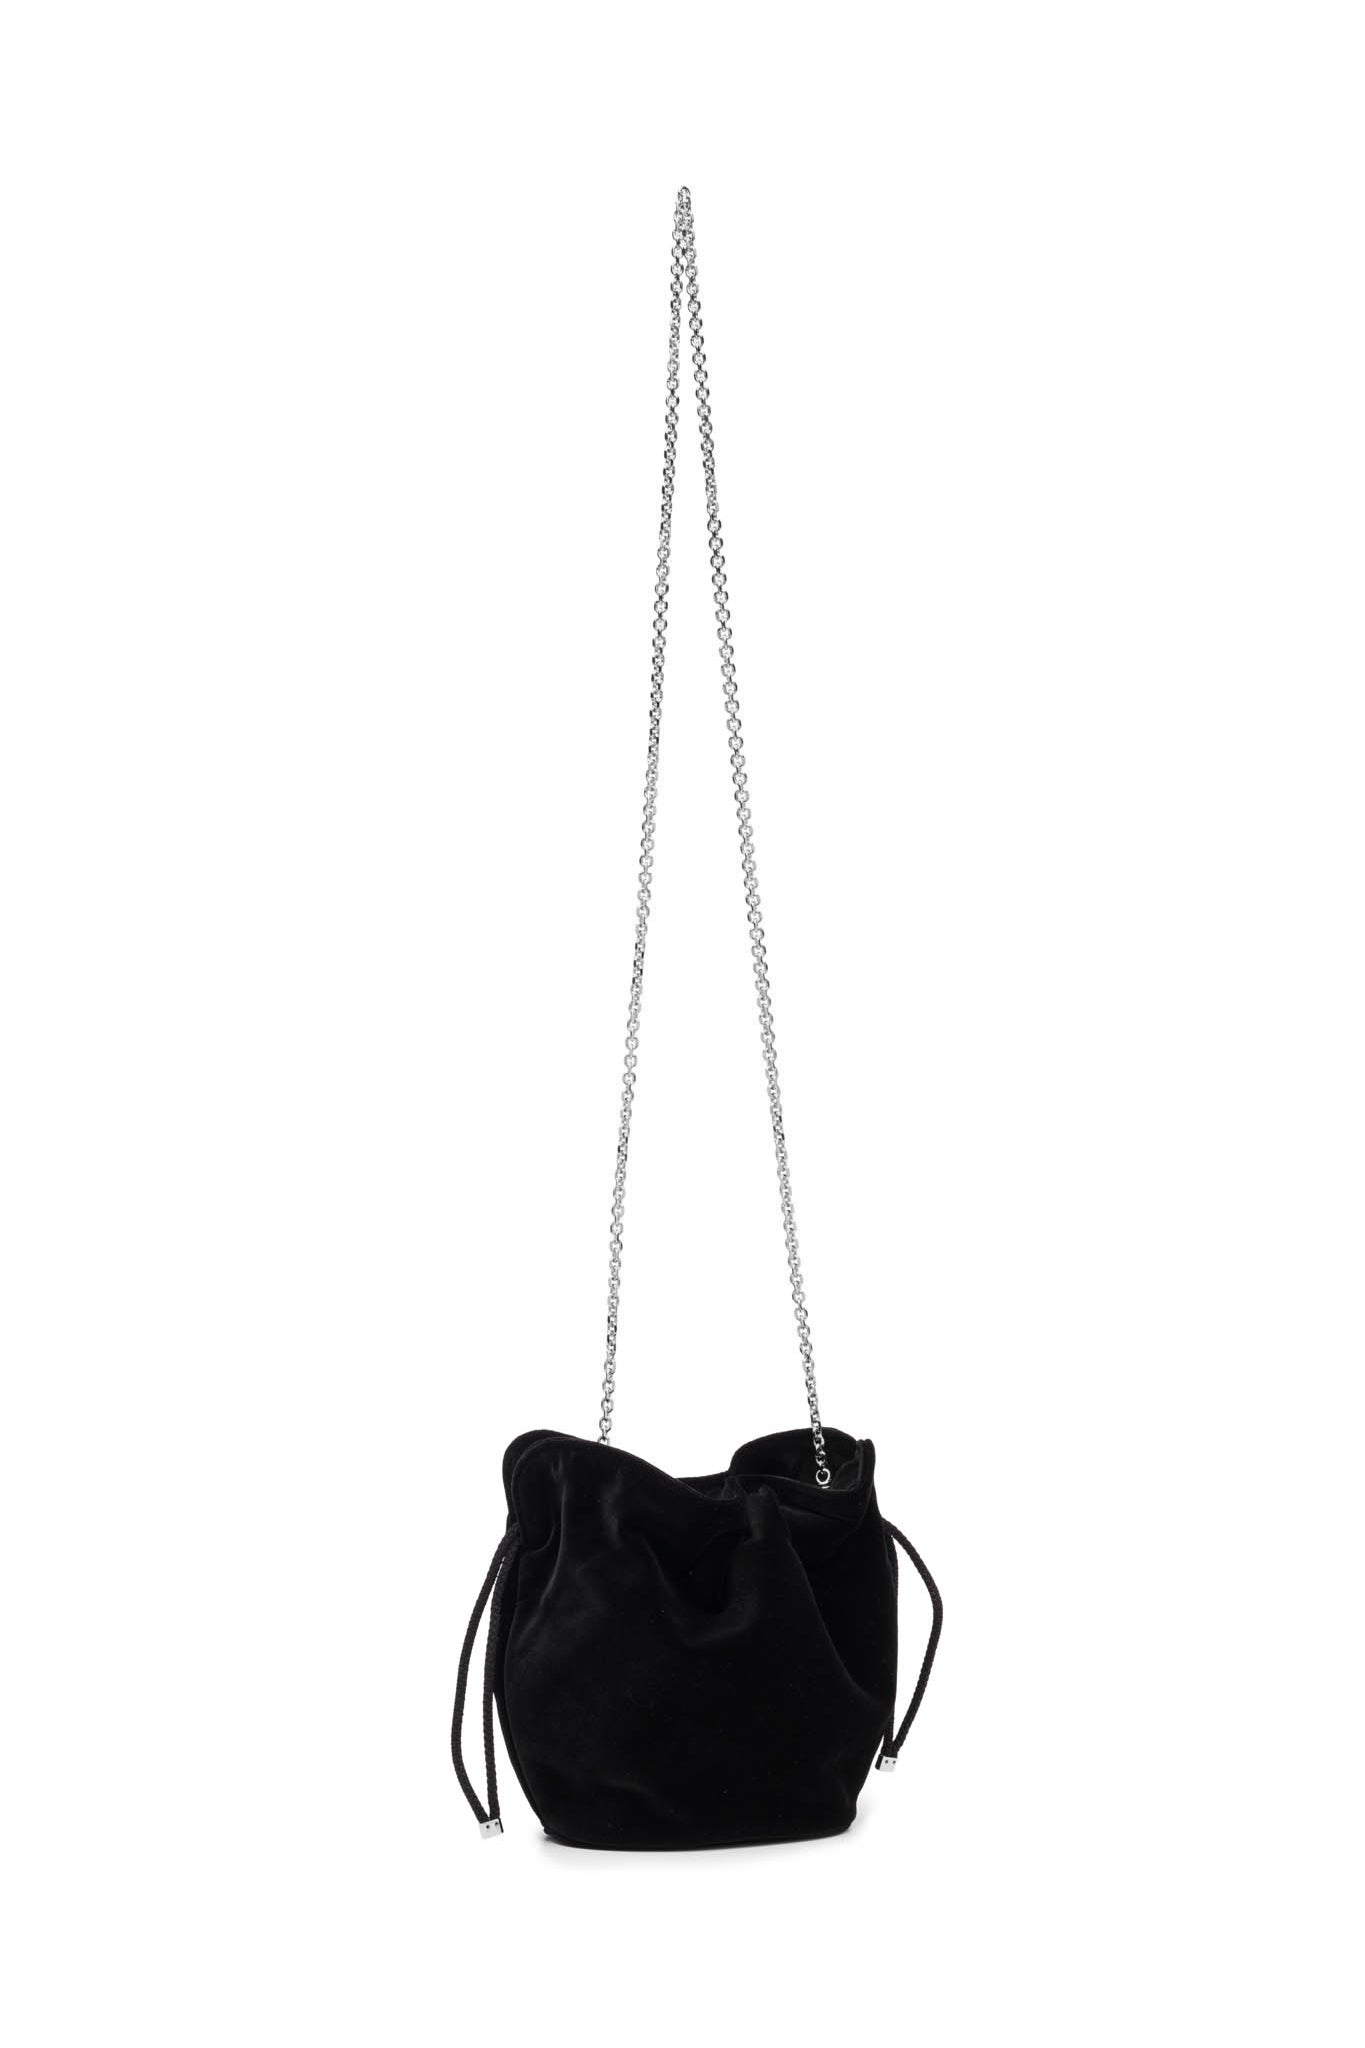 Kit Bracelet Bag in Crystal Studded Black Suede – Bienen Davis